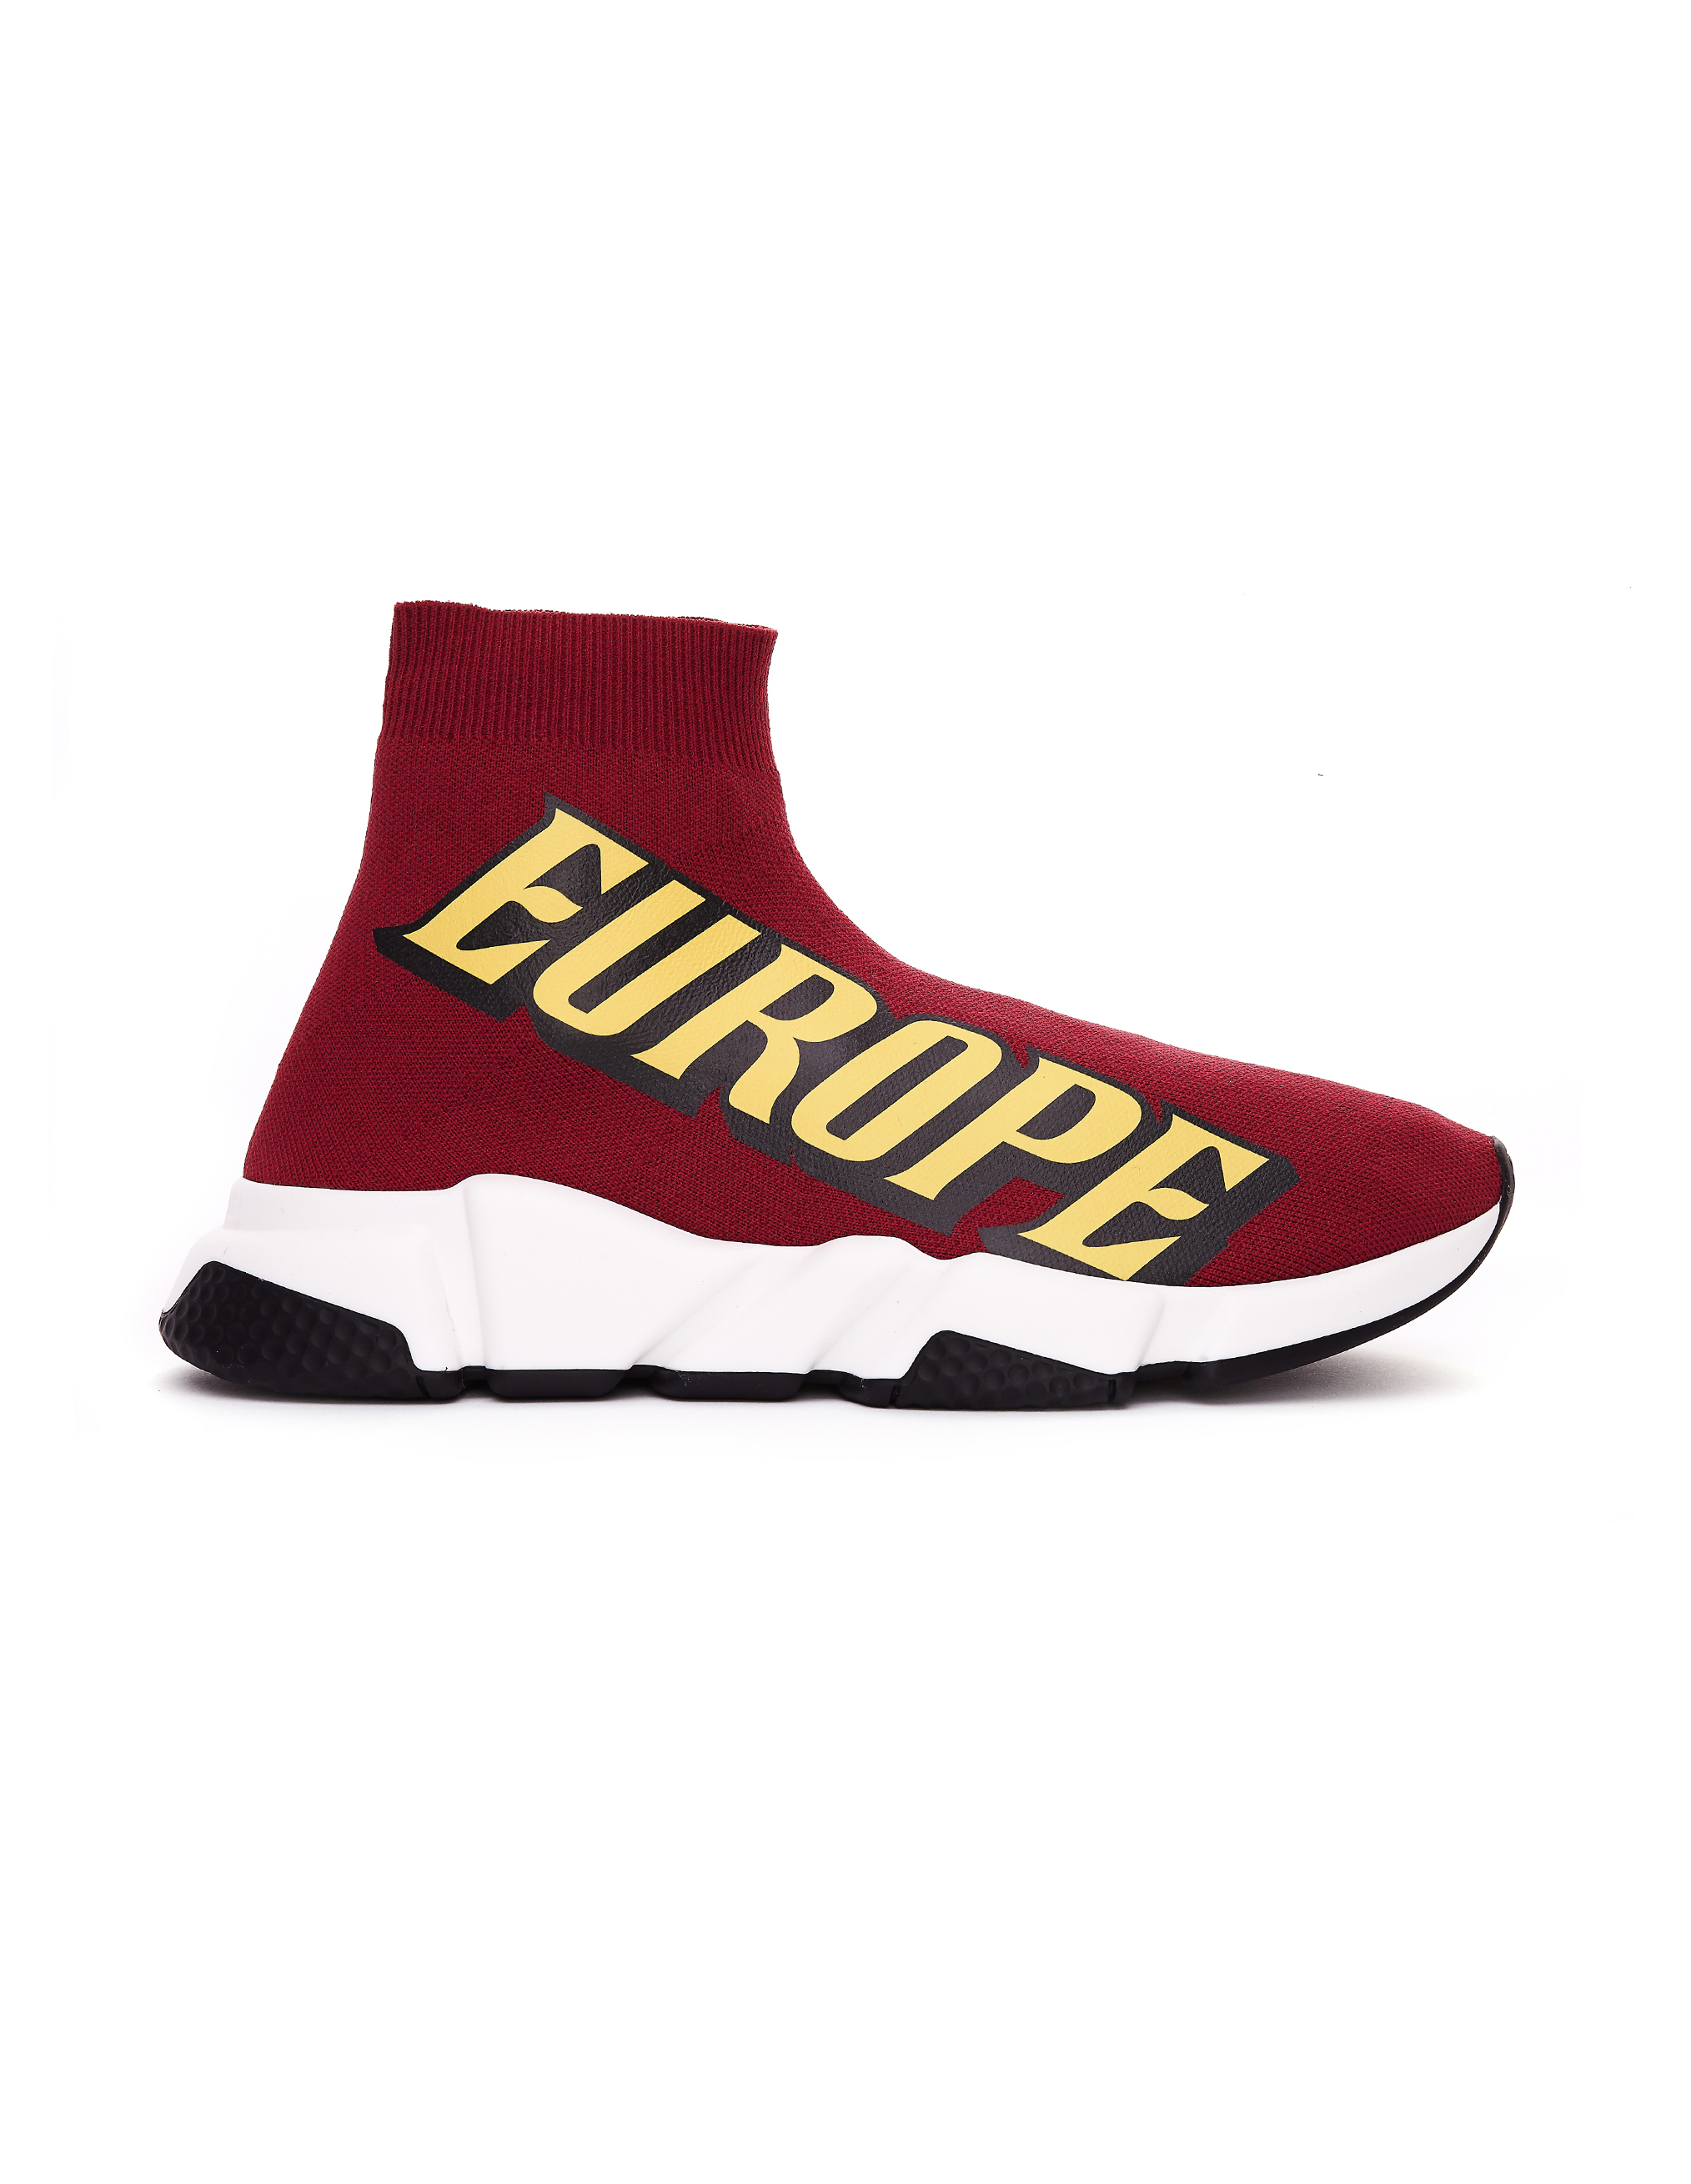 Europe Printed Speed Trainer Sneakers 